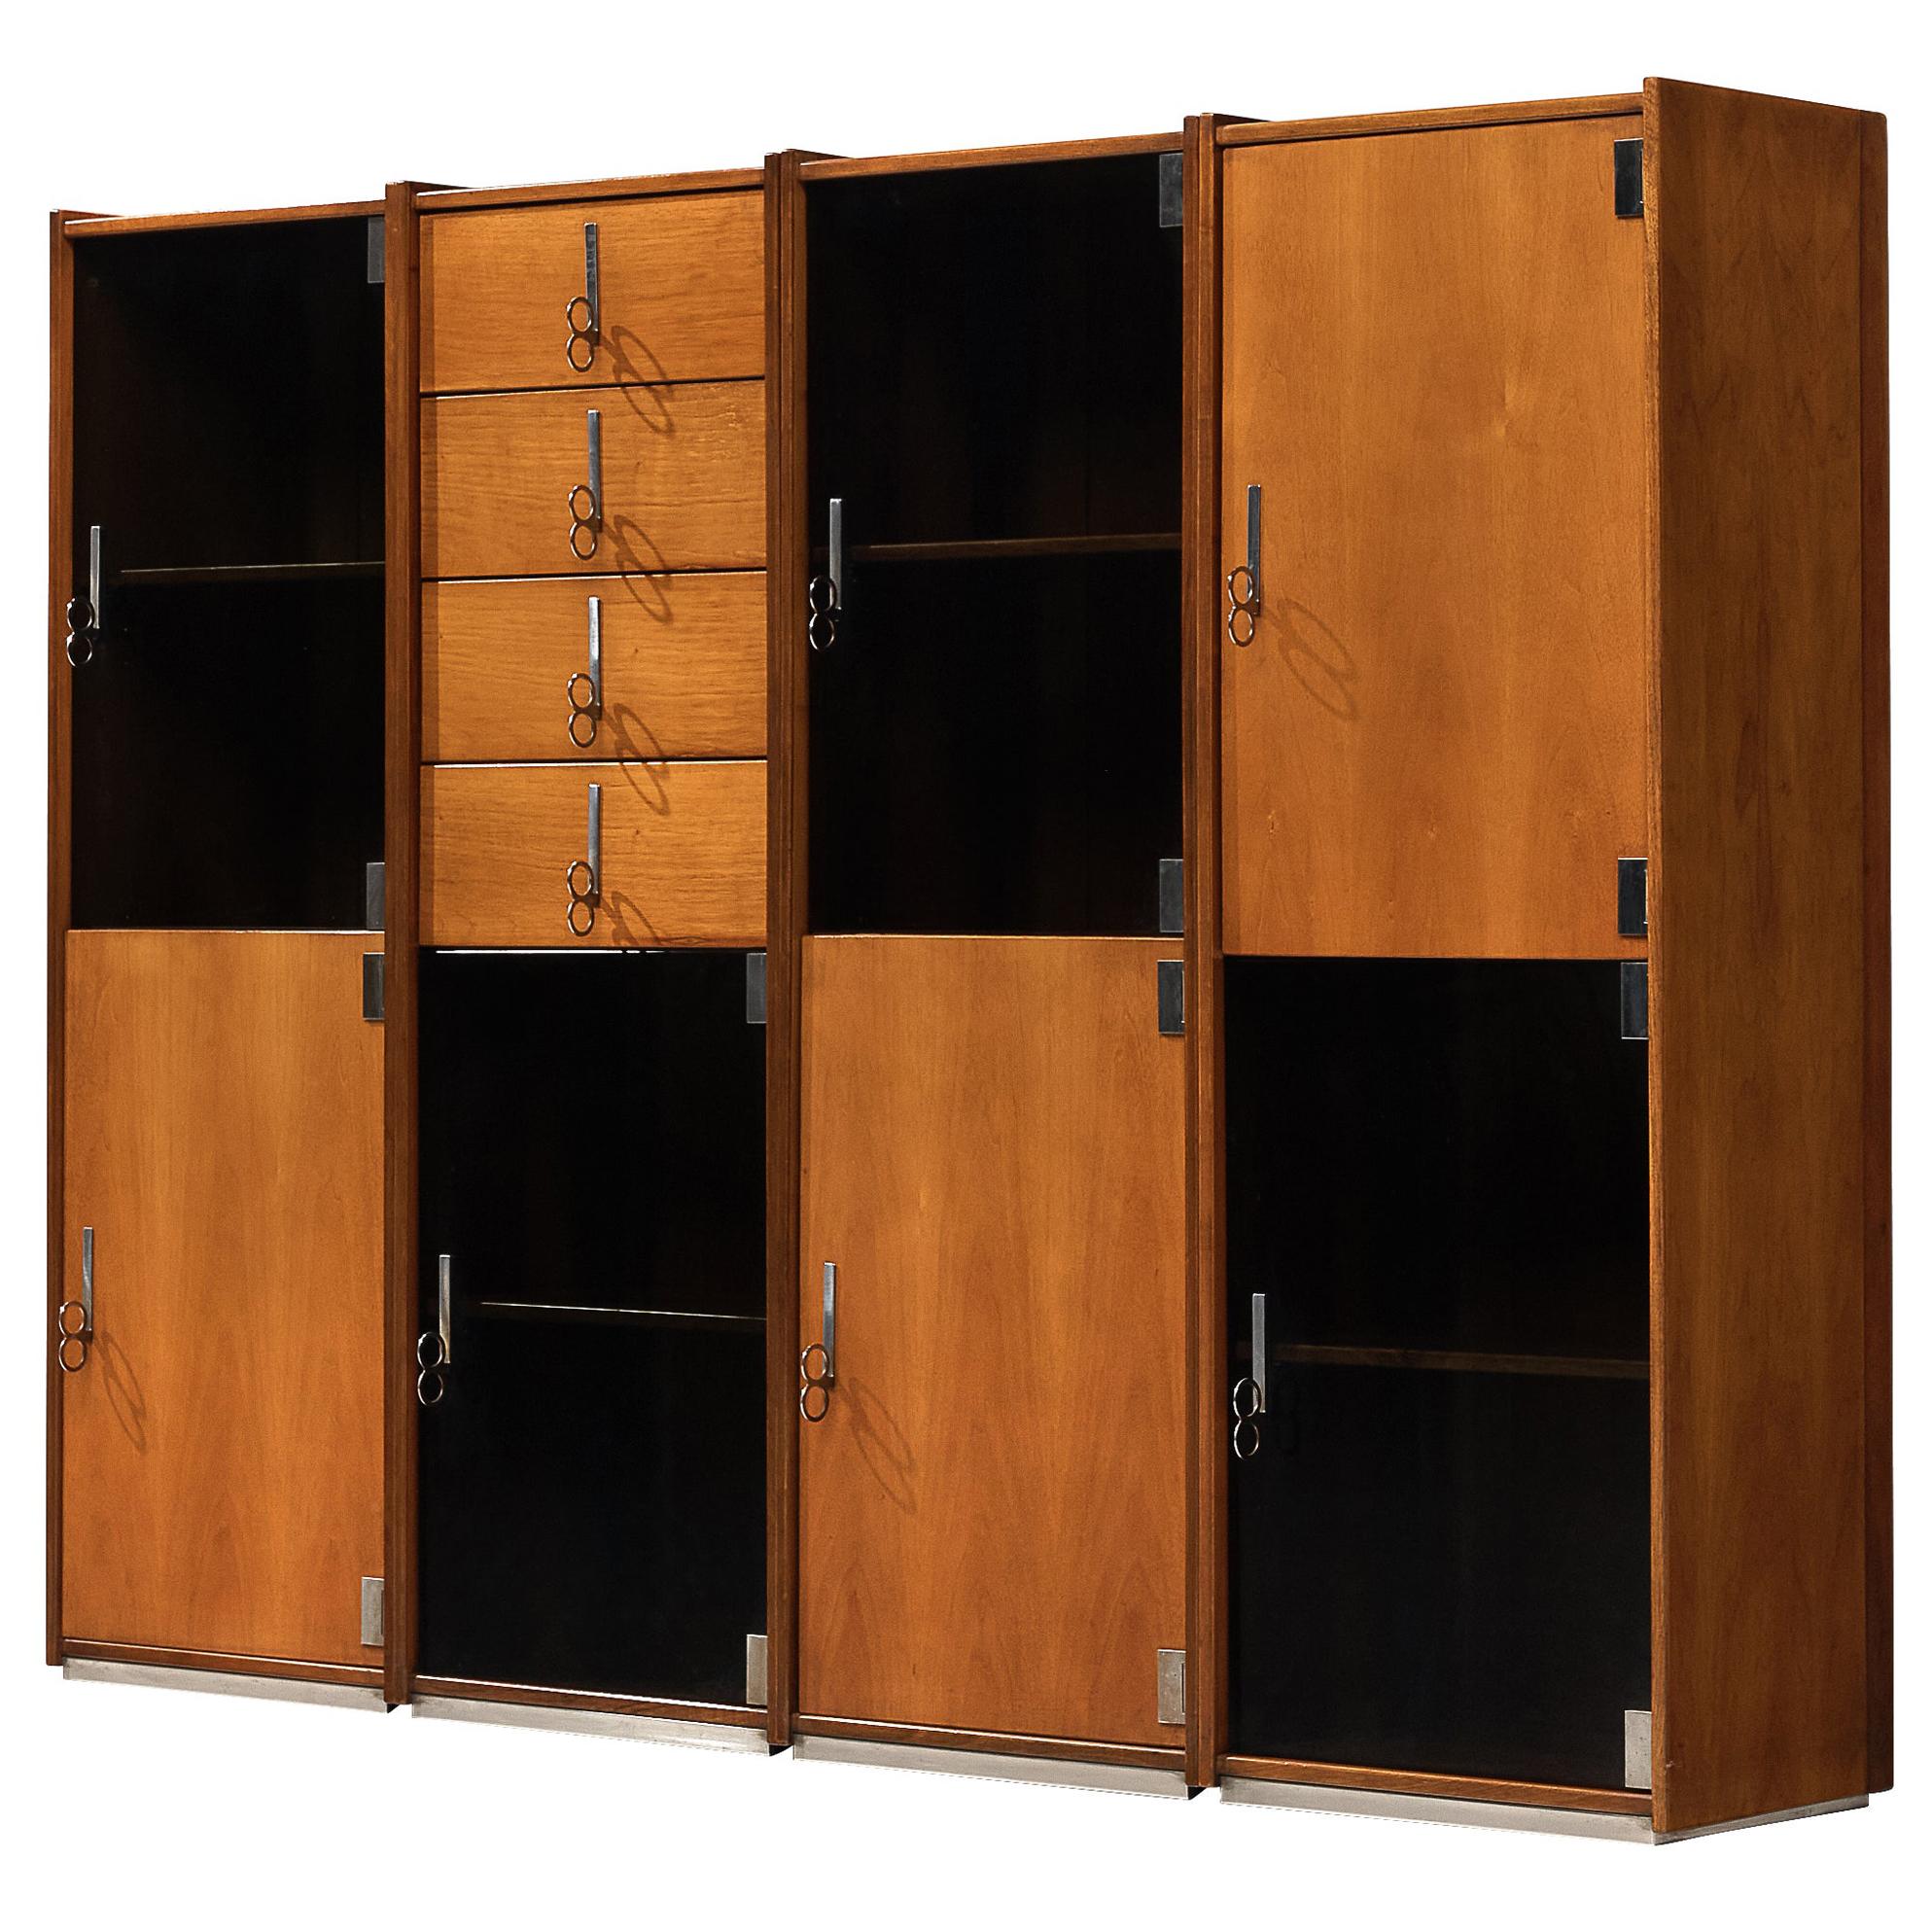 Vittorio Introini for Saporiti Free-Standing Modular Cabinets in Walnut